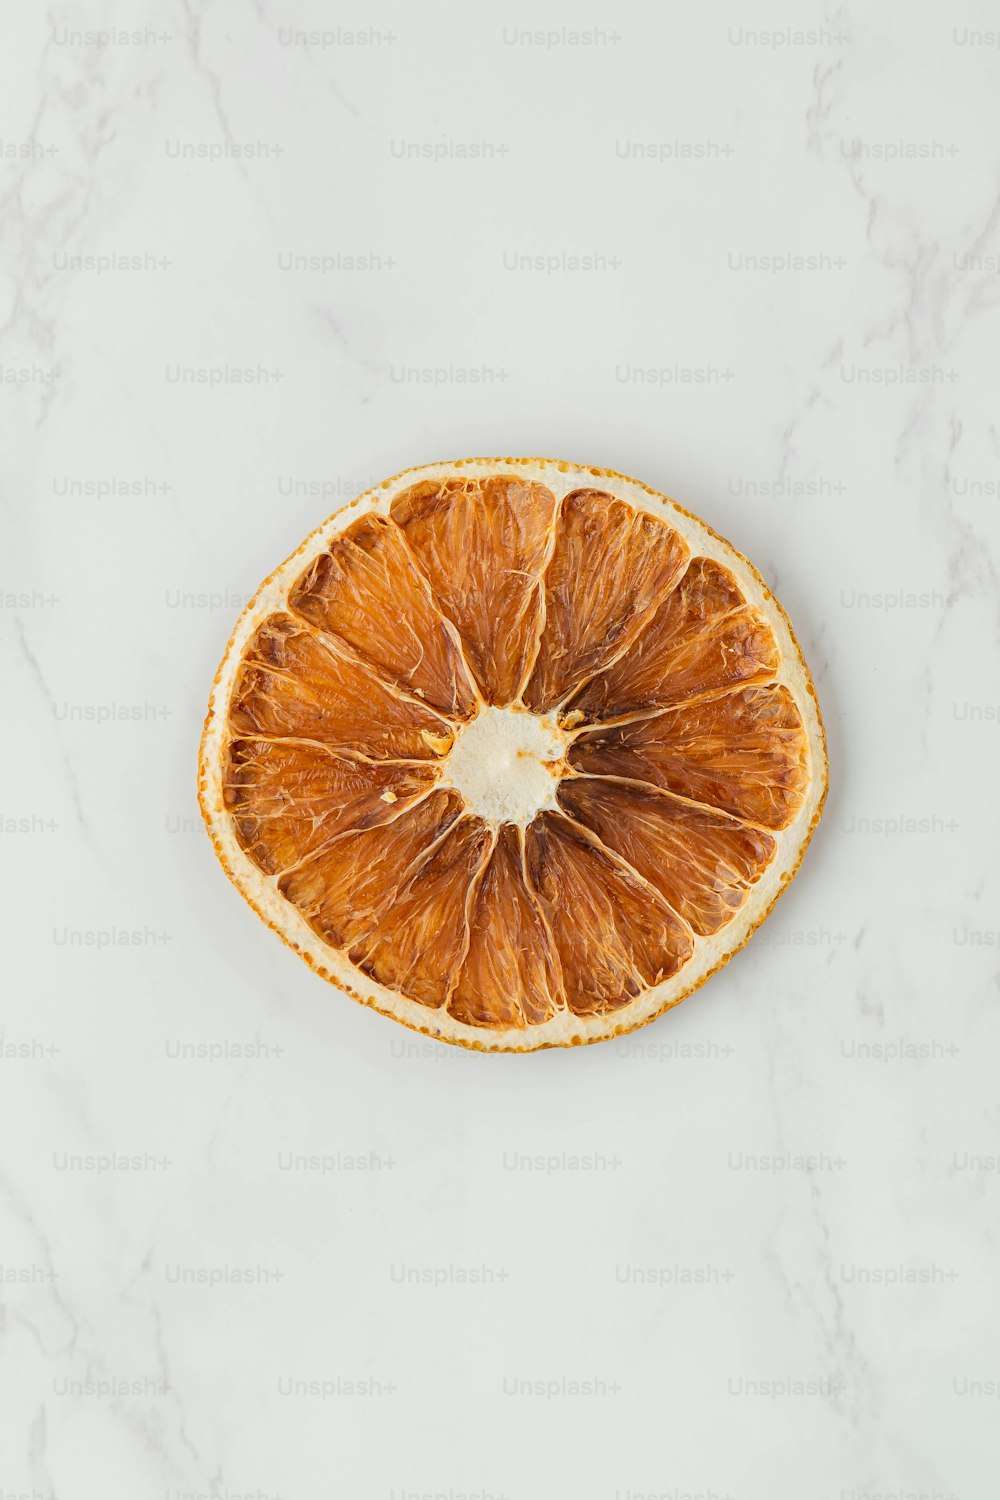 a slice of orange